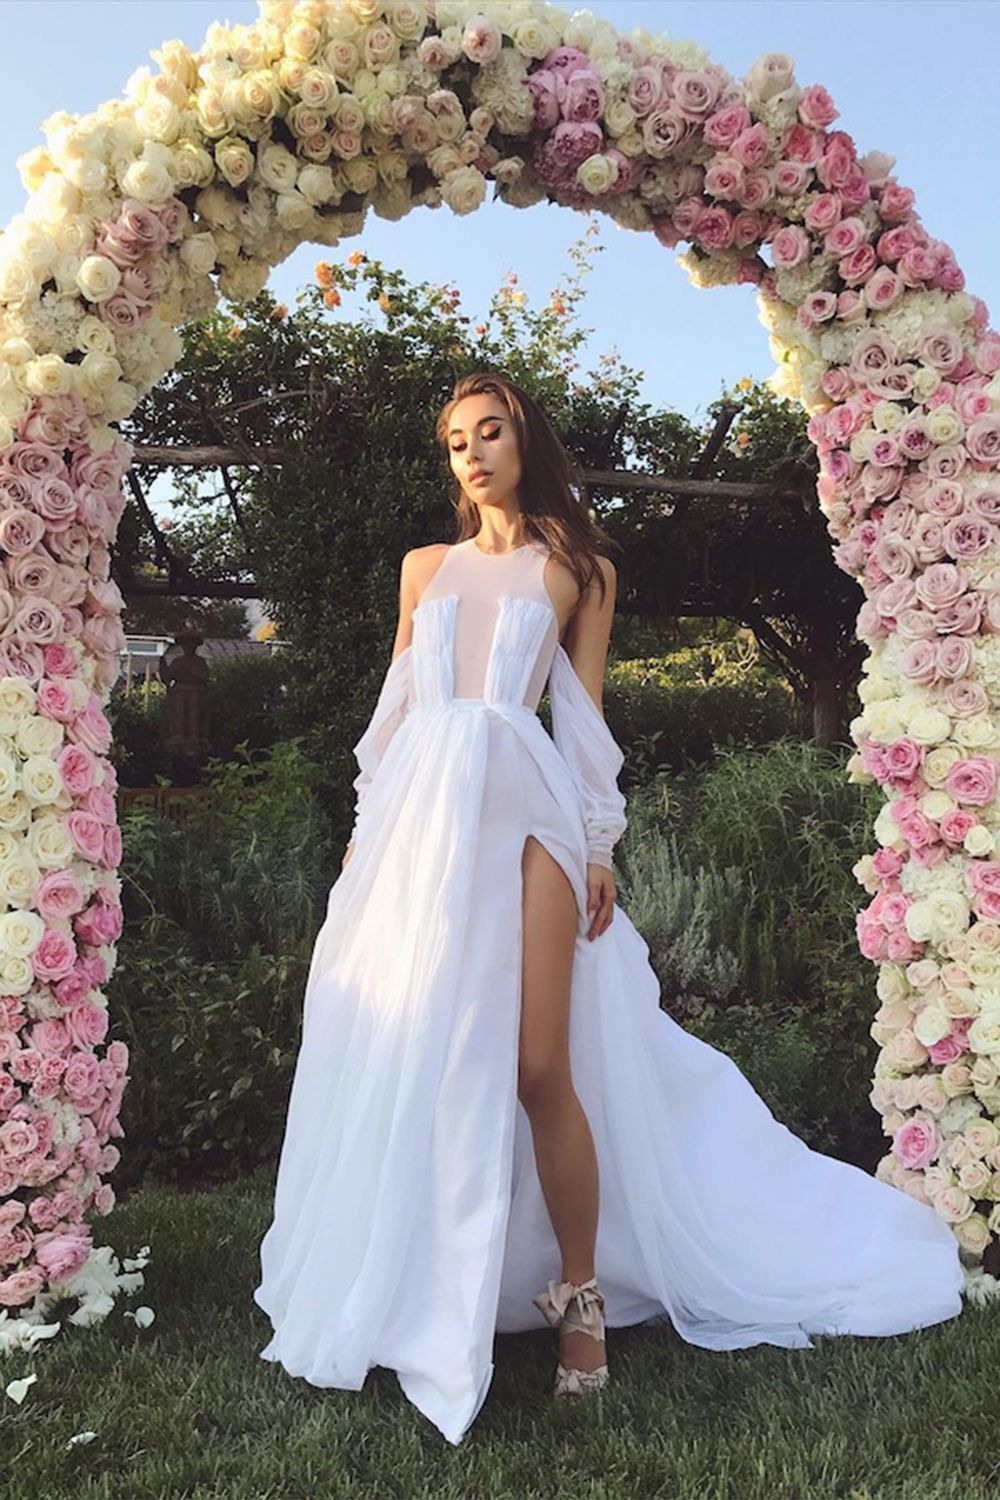 Die Schönsten Brautkleider Der Stars In 2020  Kleid